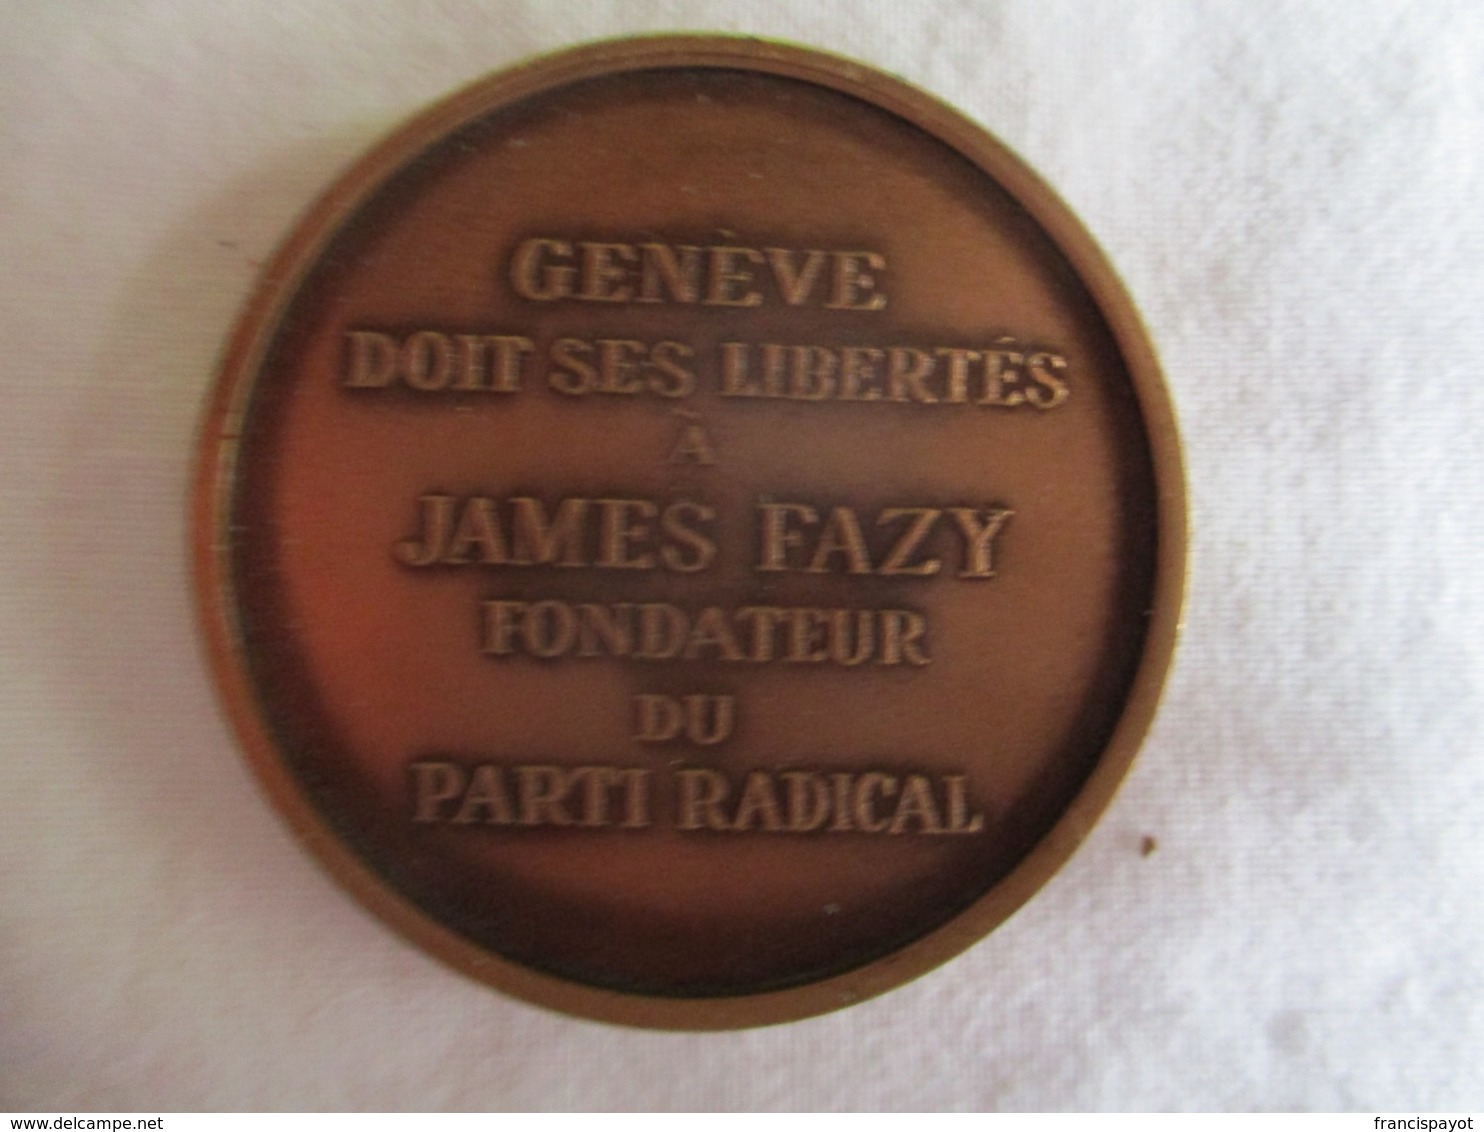 Suisse: Genève Doit Ses Libertés à James Fazy Fondateur Du Parti Radical 1976 - Adel